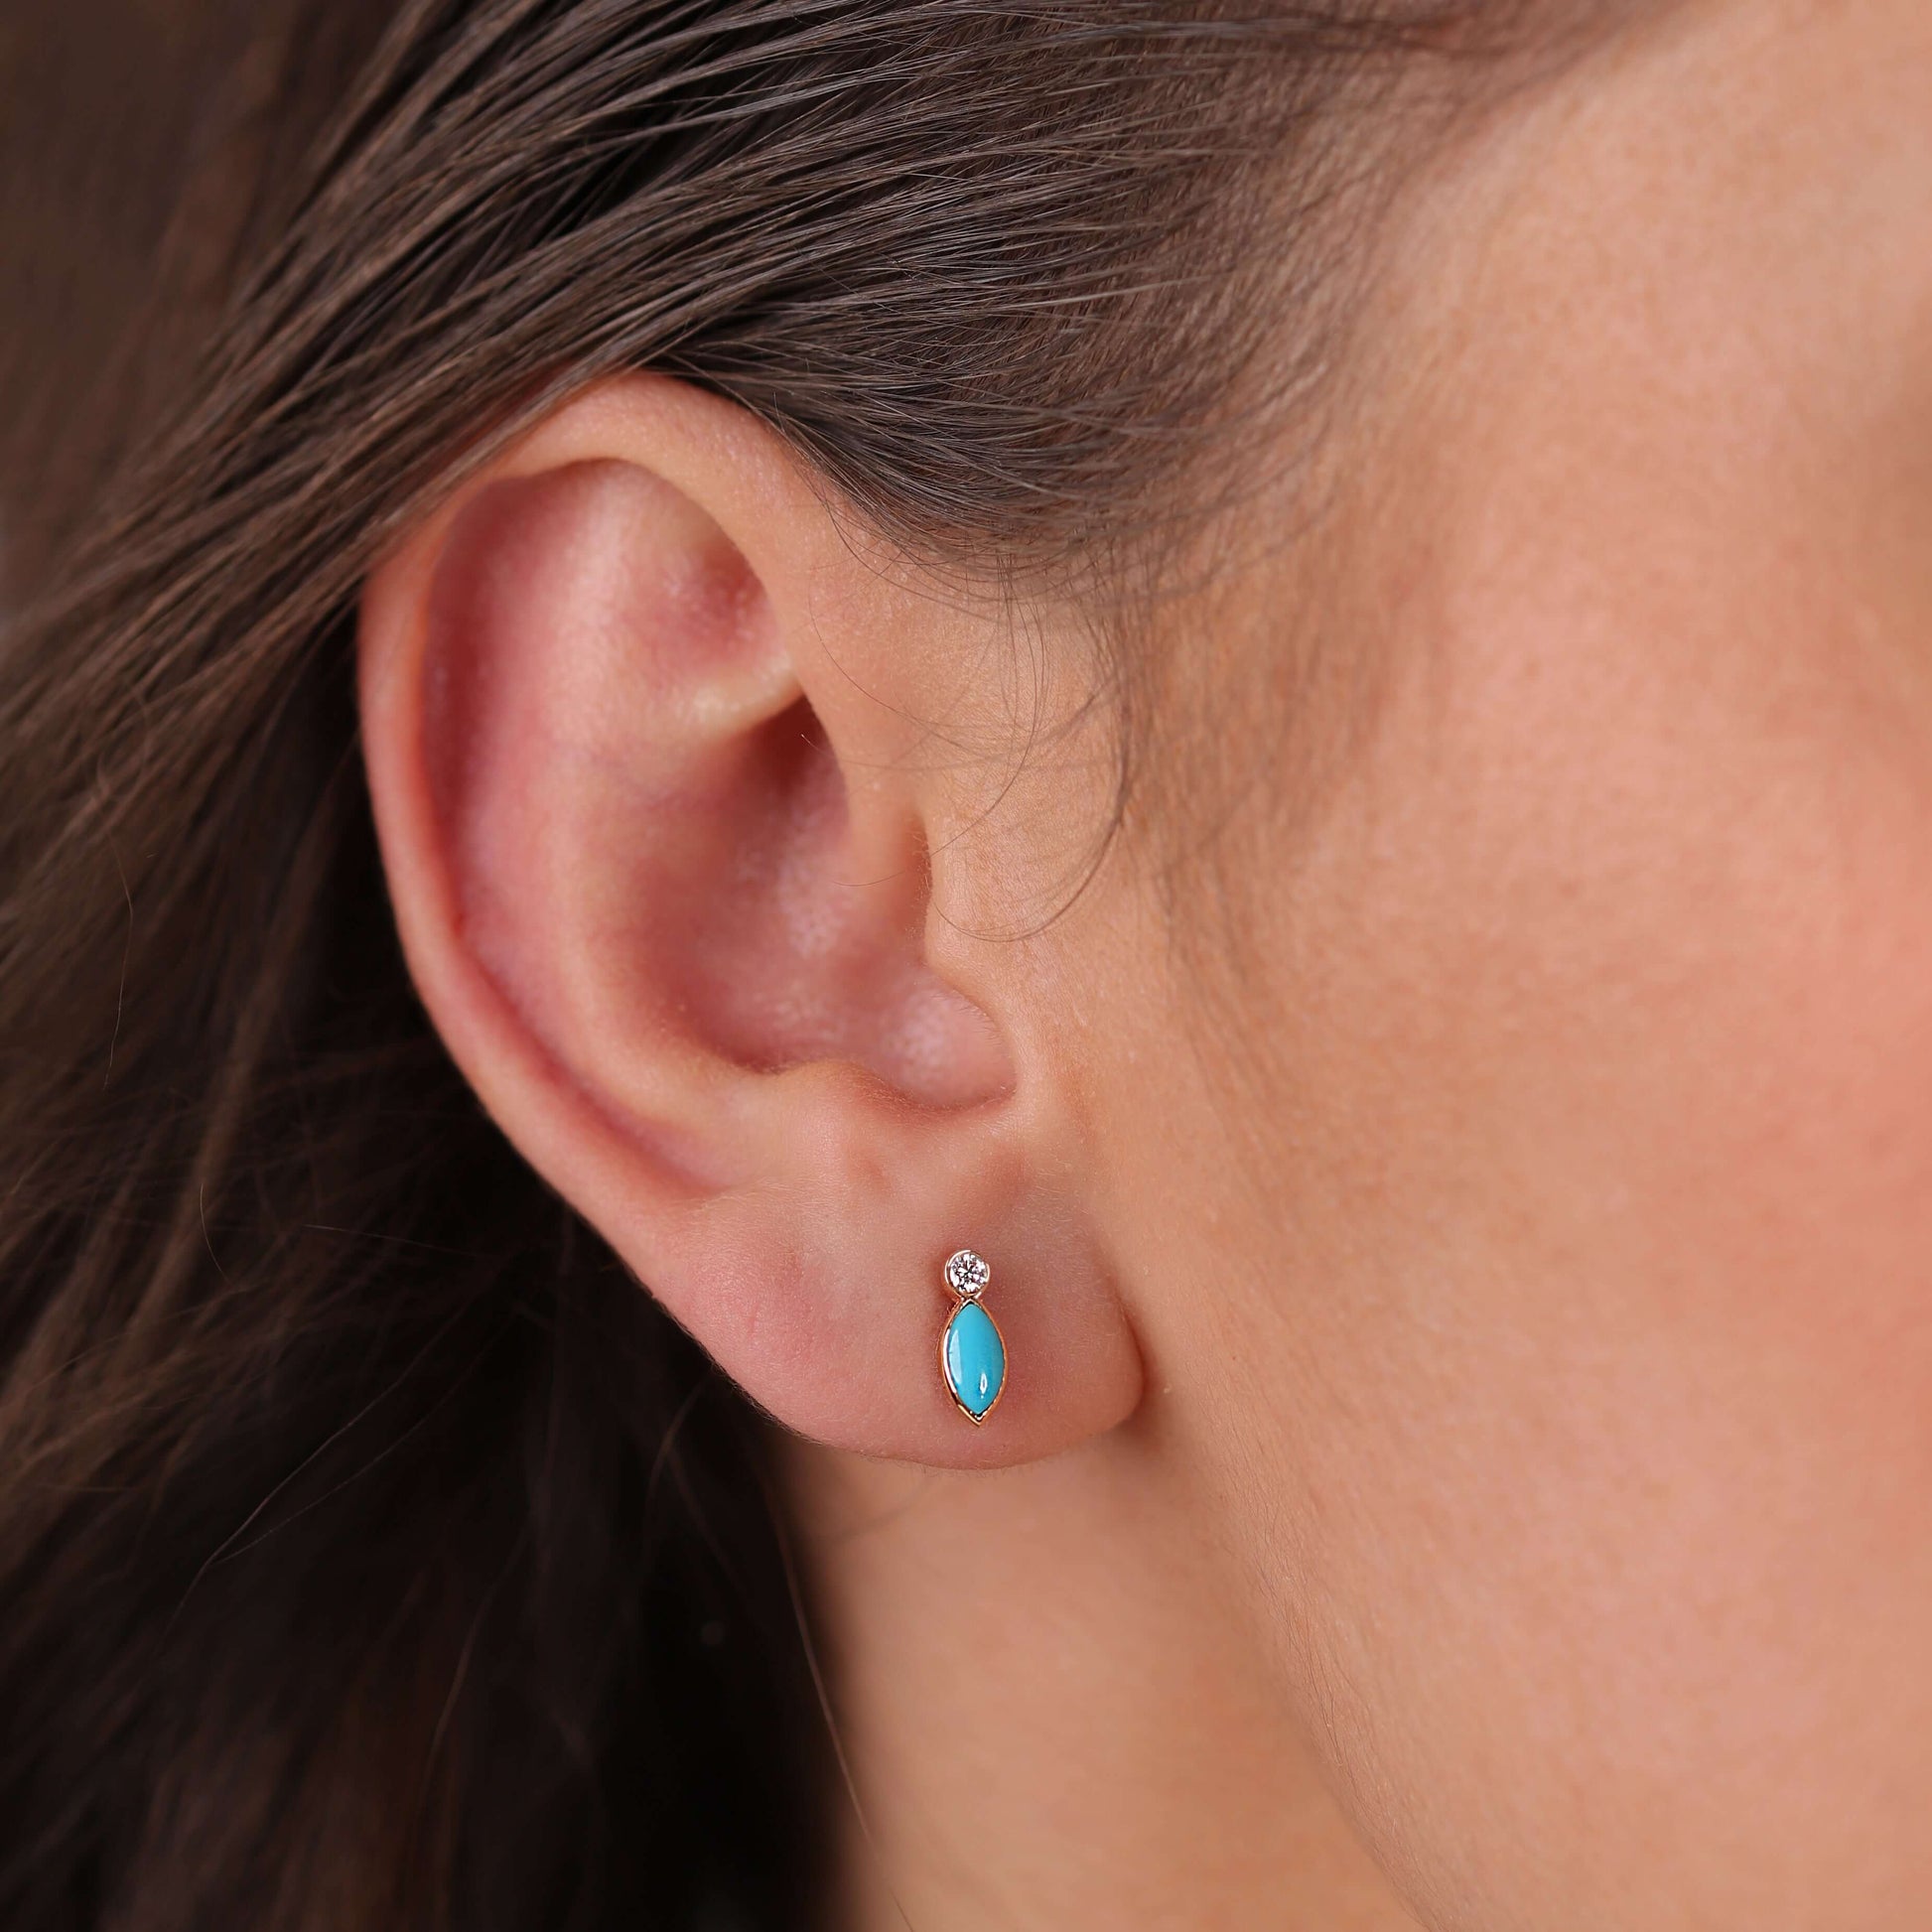 Gilda Jewelry Breeze Studs | Diamond Earrings | 14K Gold - earrings Zengoda Shop online from Artisan Brands